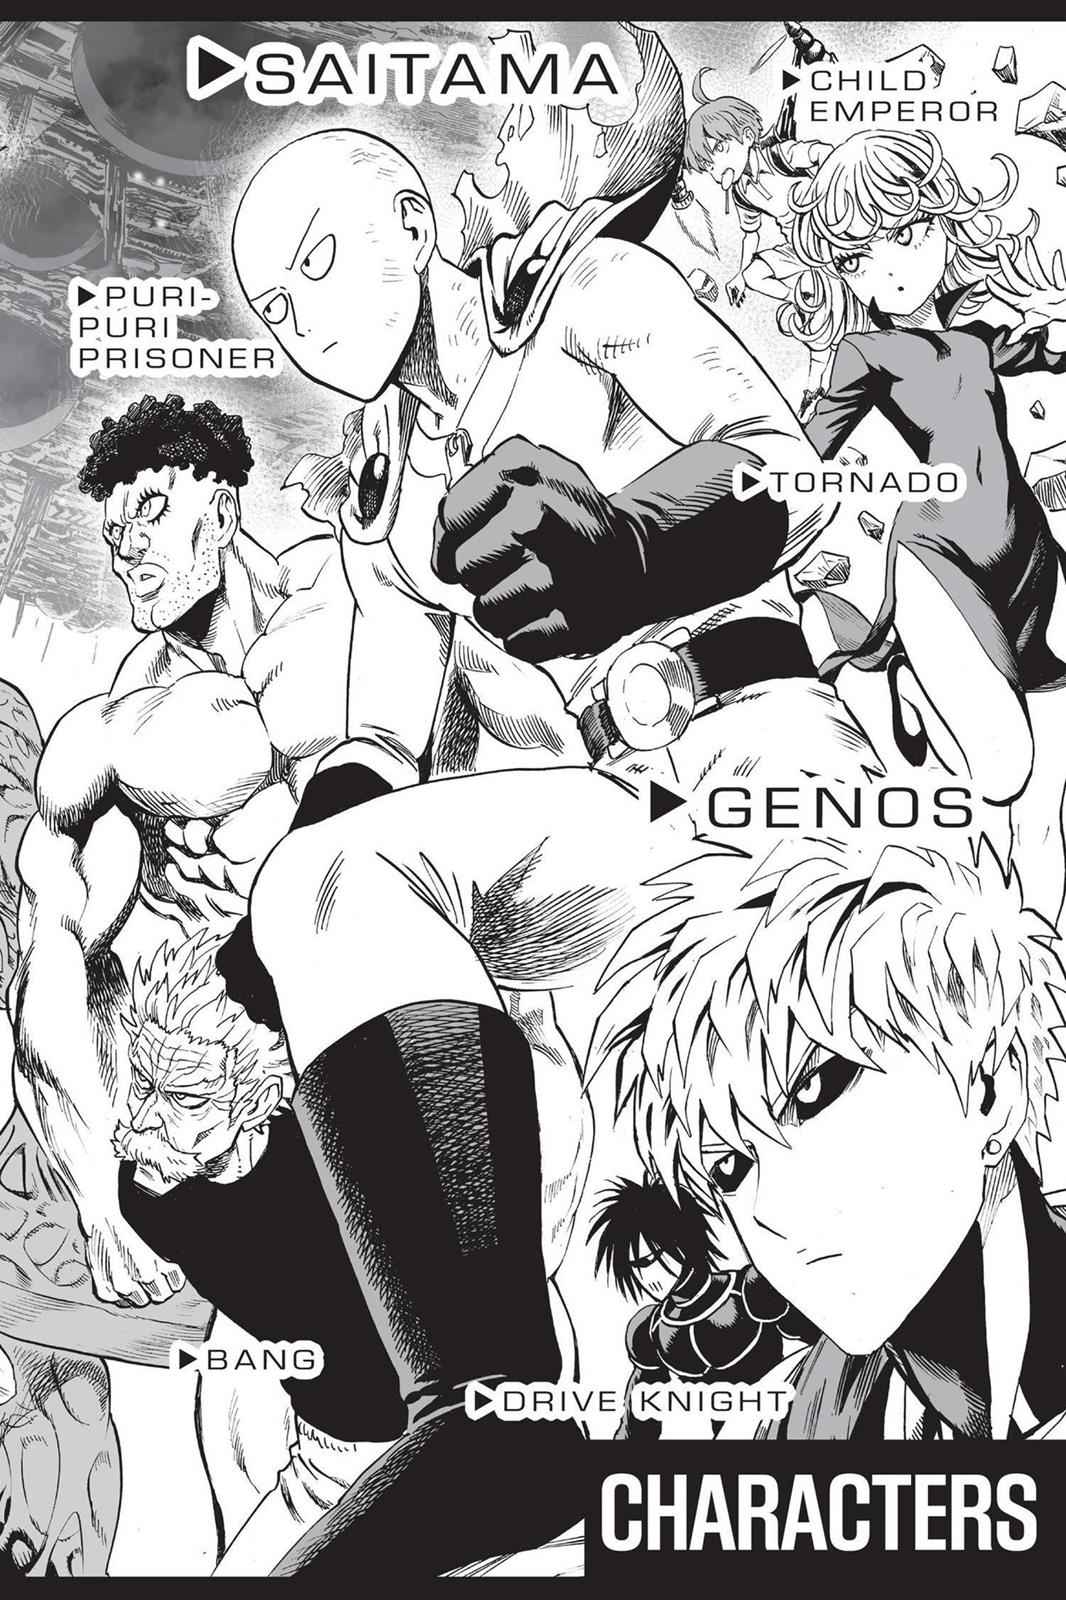 Senritsu no Tatsumaki in OPM Manga Covers